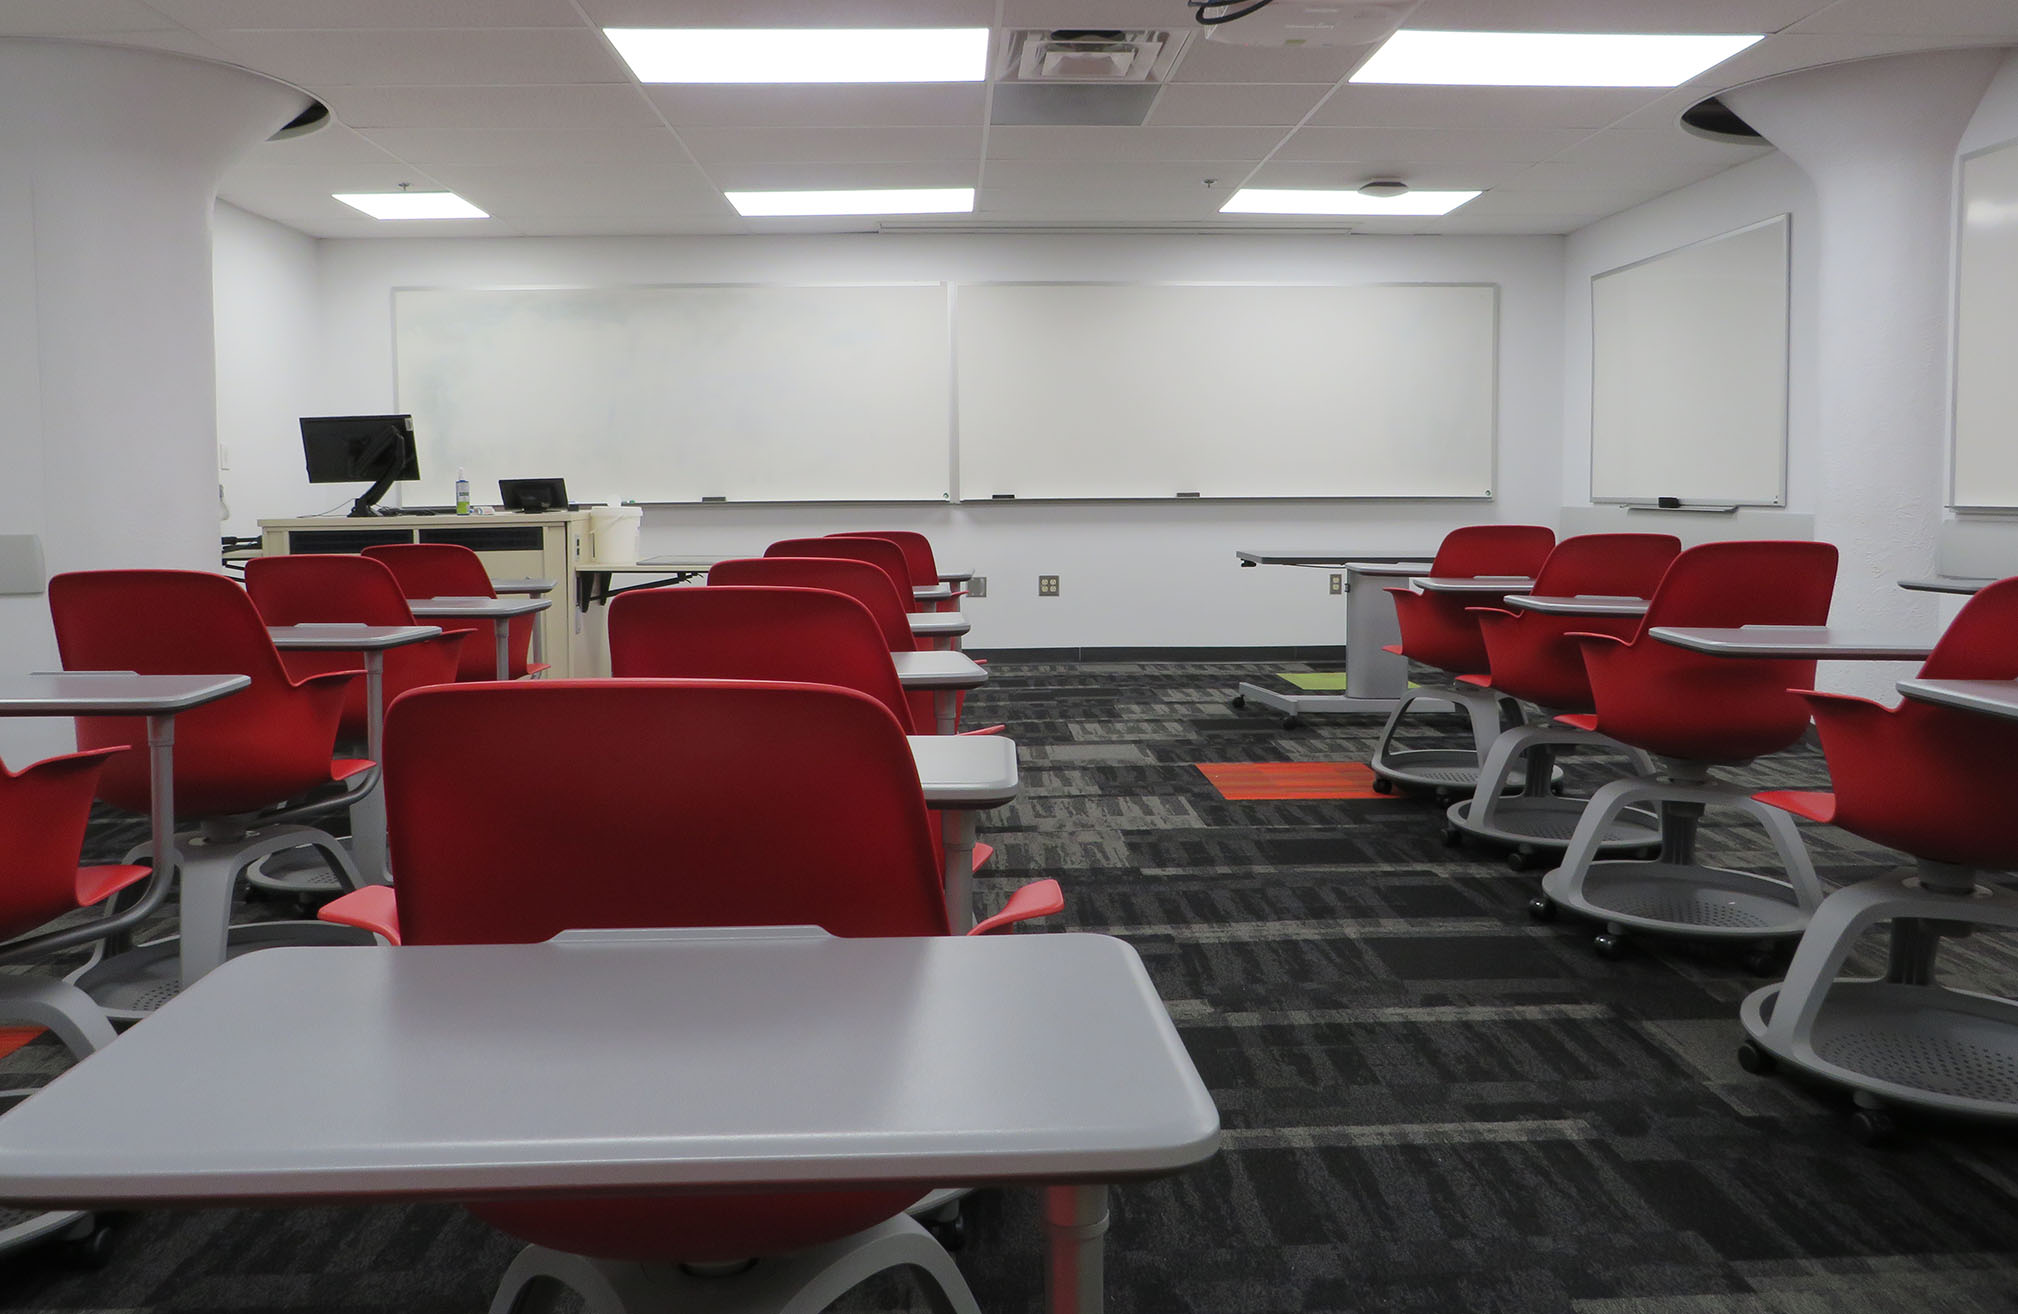 Enarson Classroom Building Room 15